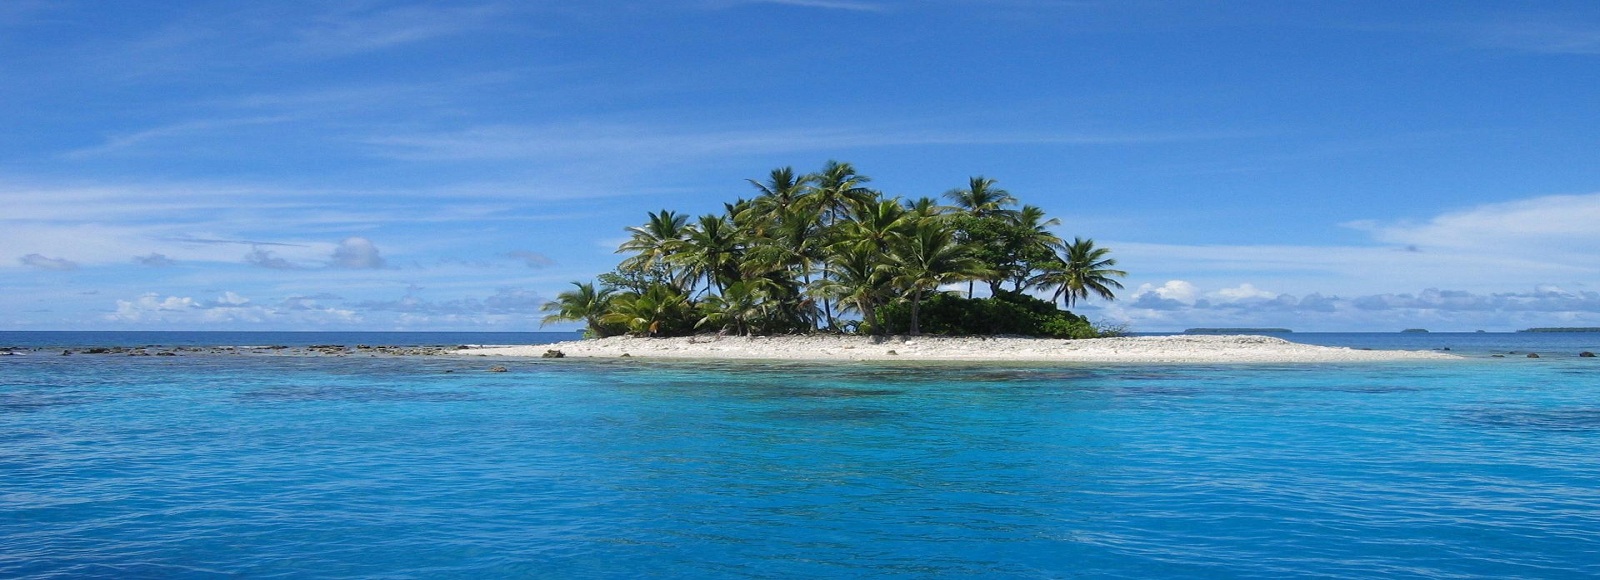 Ofertas de Traslados en Micronesia. Traslados económicos en Micronesia 